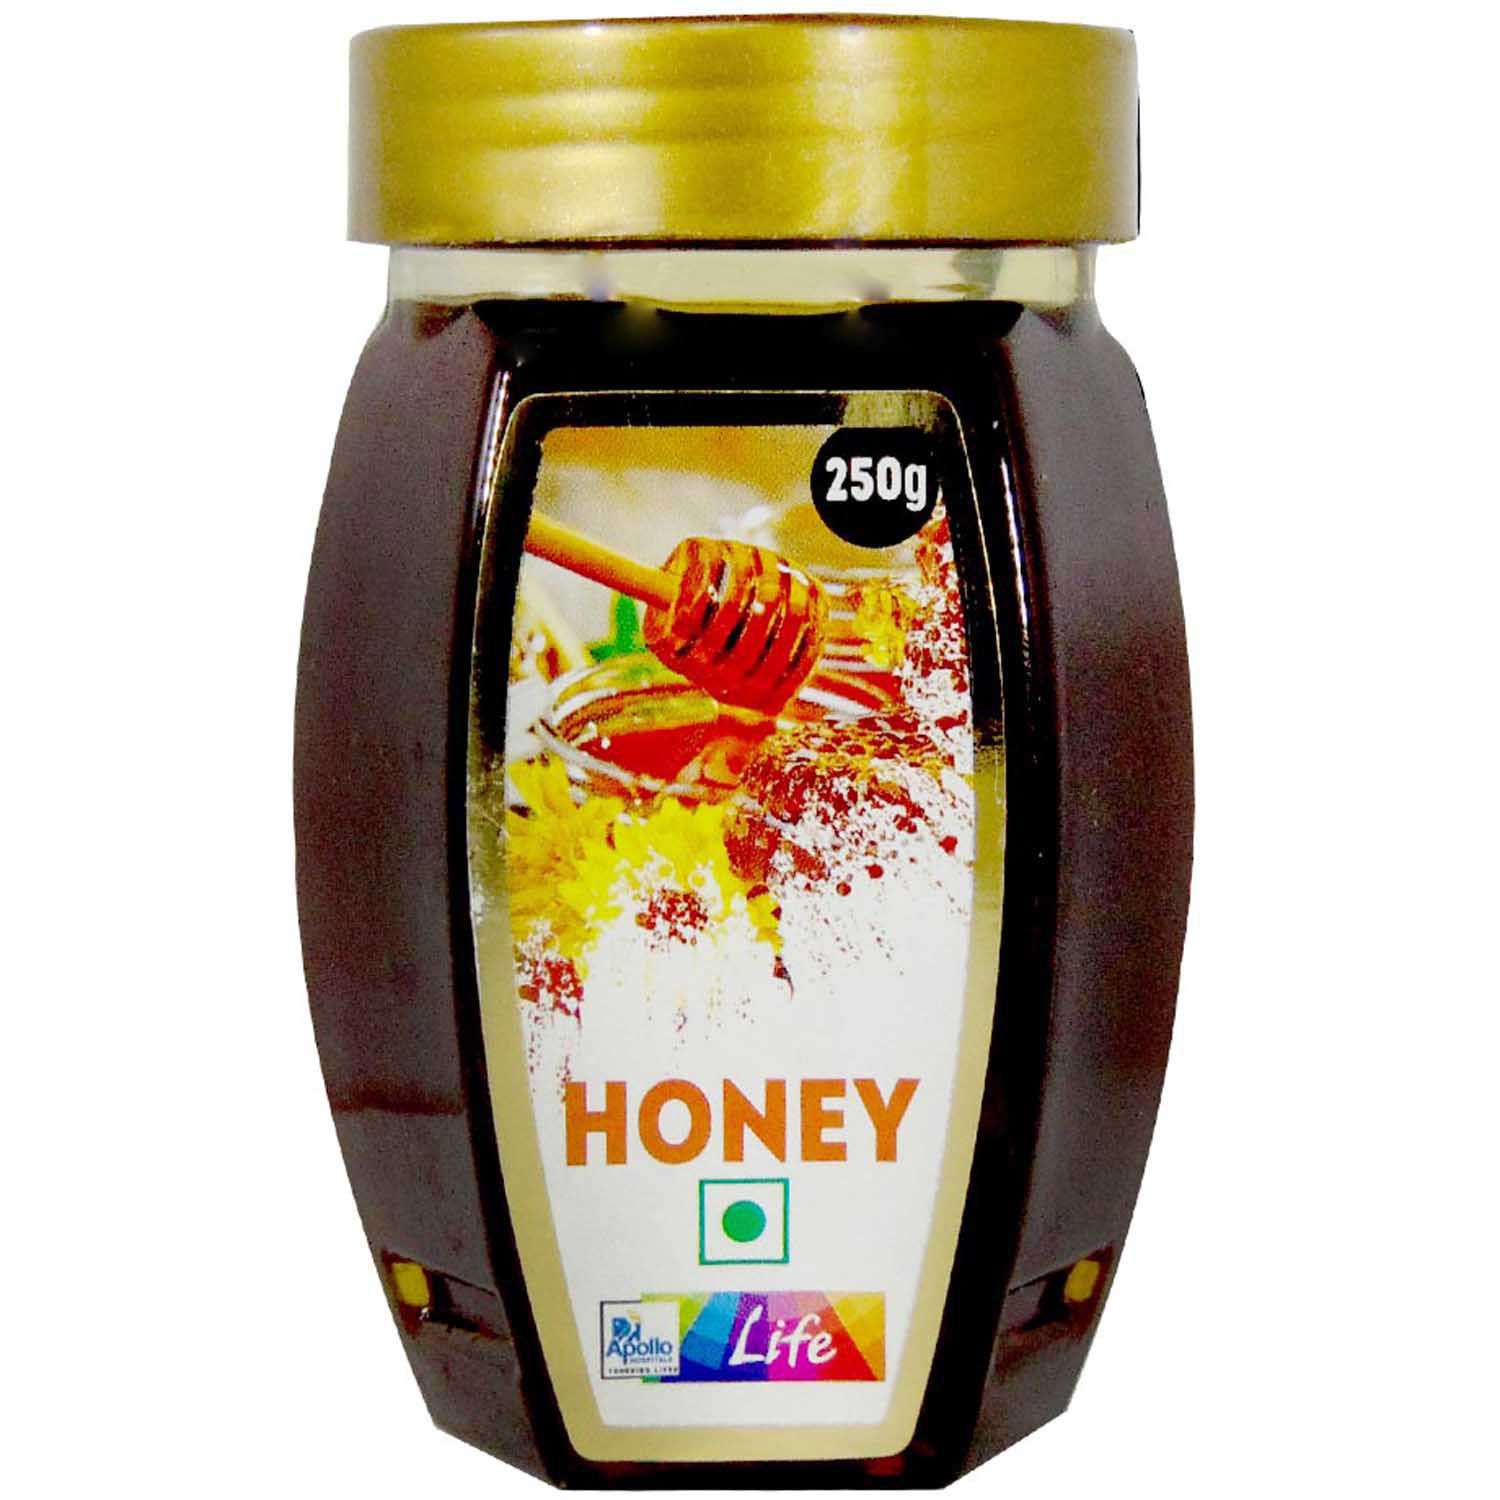 Buy Apollo Life Honey, 250 gm Online